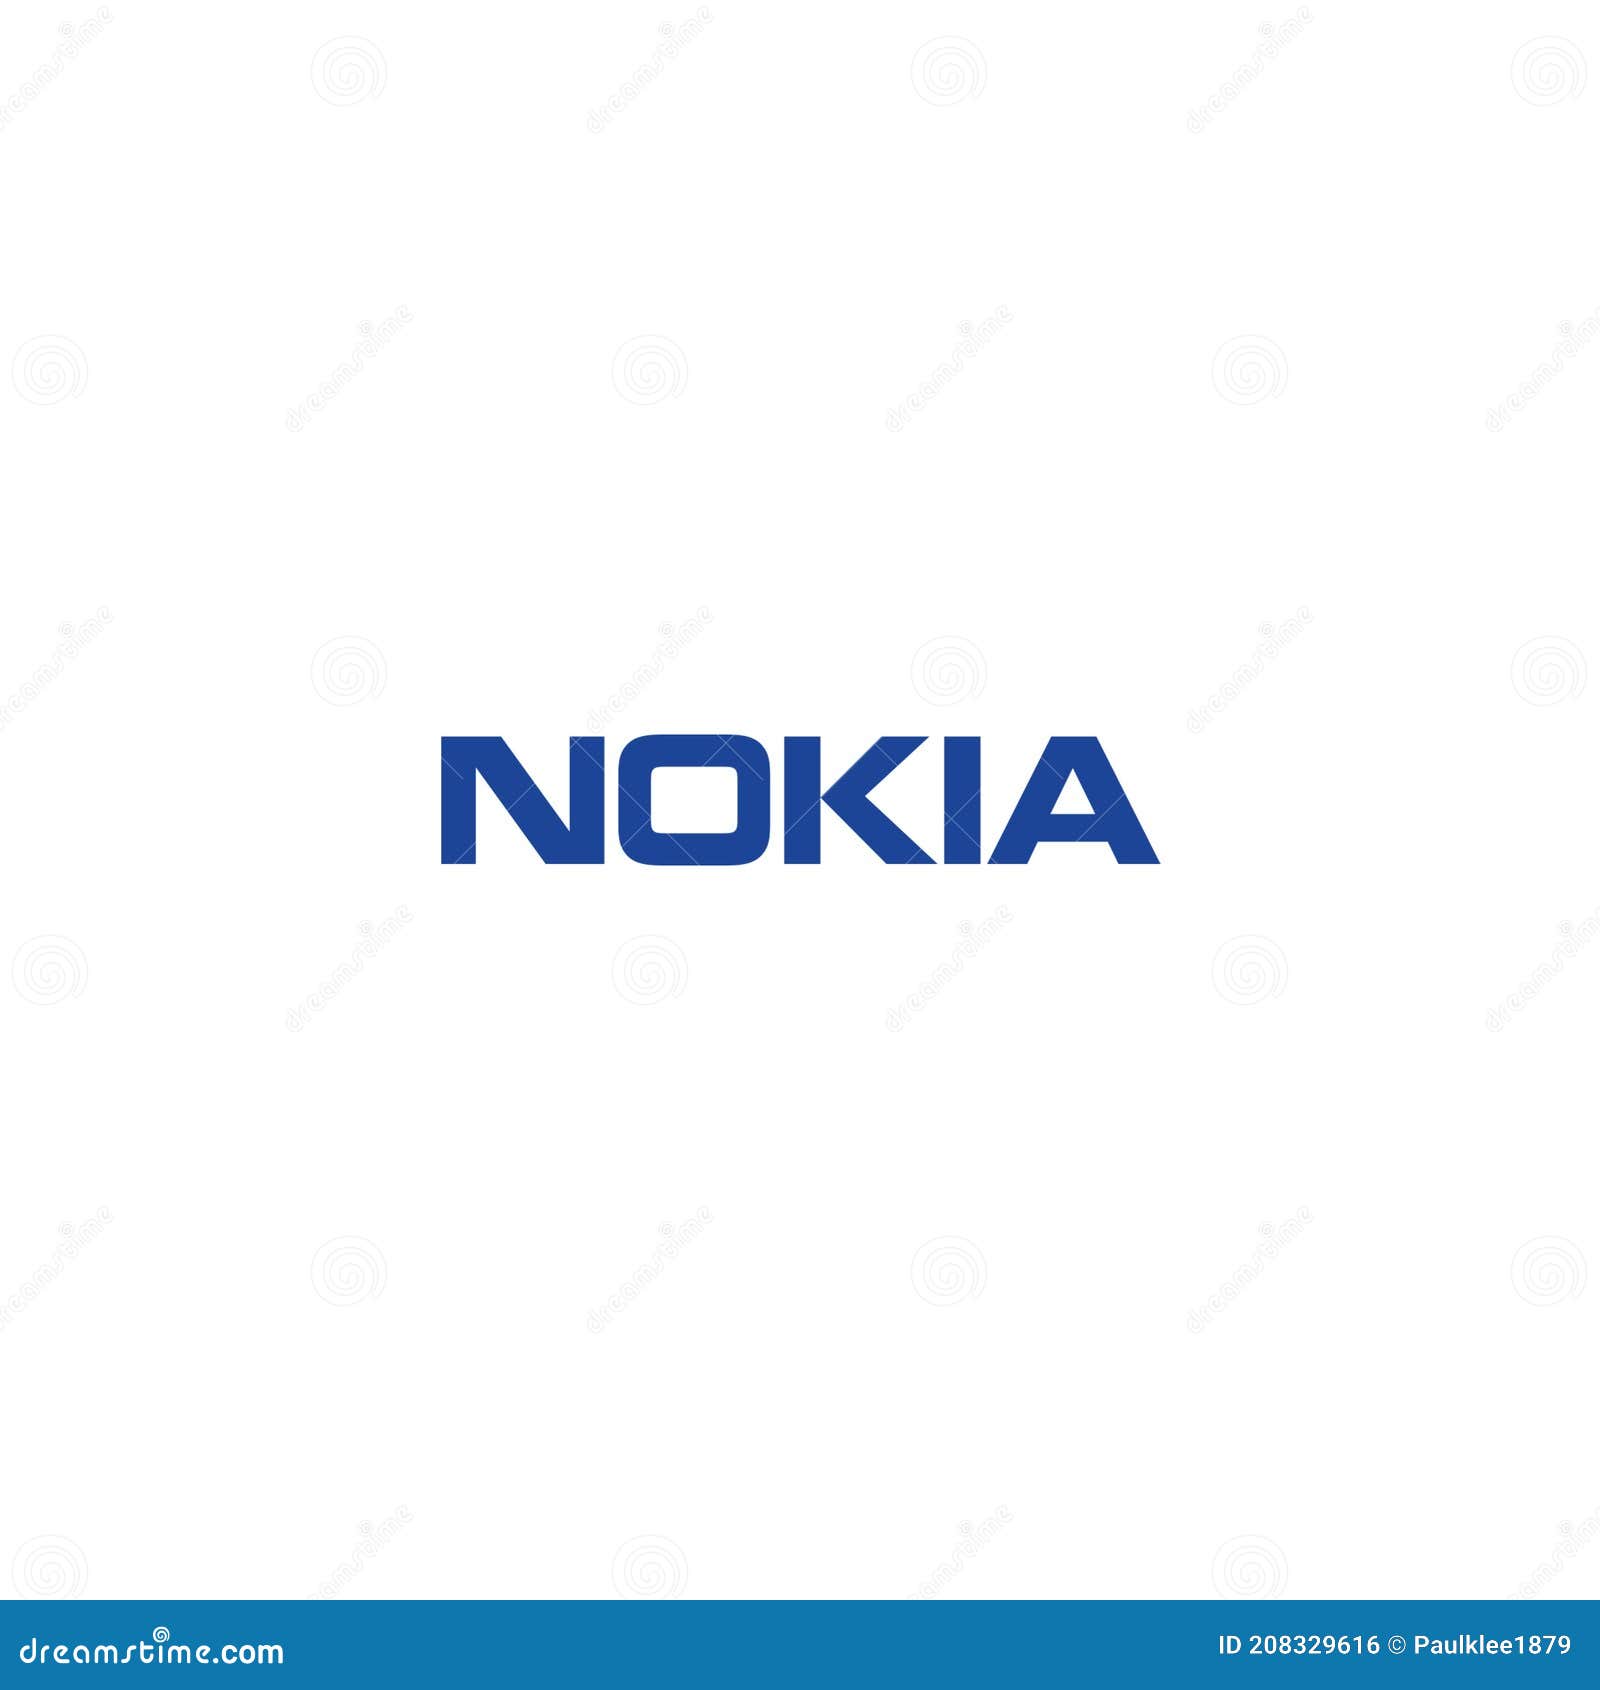 Chỉ nhìn thấy hình logo đầy thương mại của Nokia cũng đủ khiến bạn cảm thấy bị thu hút. Từ những ngày đầu của công ty, Nokia đã trở thành biểu tượng của sự độc đáo và sáng tạo. Hãy xem những hình ảnh liên quan đến hình logo Nokia và tìm hiểu thêm về thương hiệu kinh điển này.